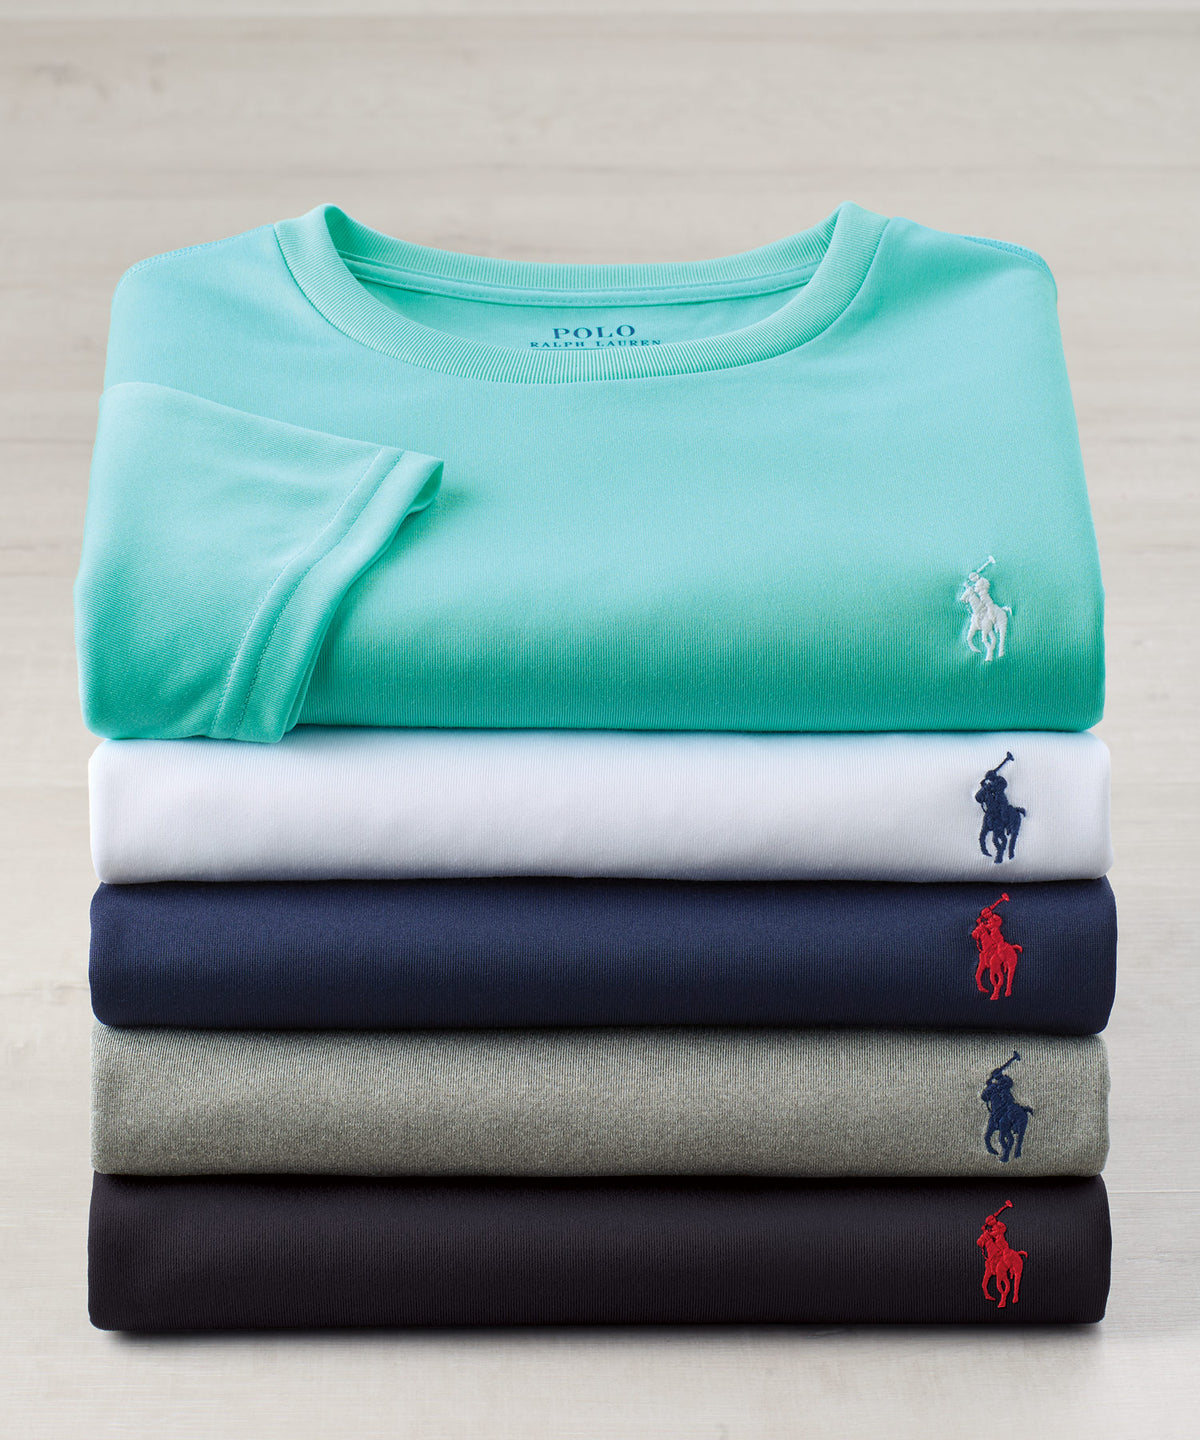 Polo Ralph Lauren Short Sleeve Performance T-Shirt Westport Big & Tall